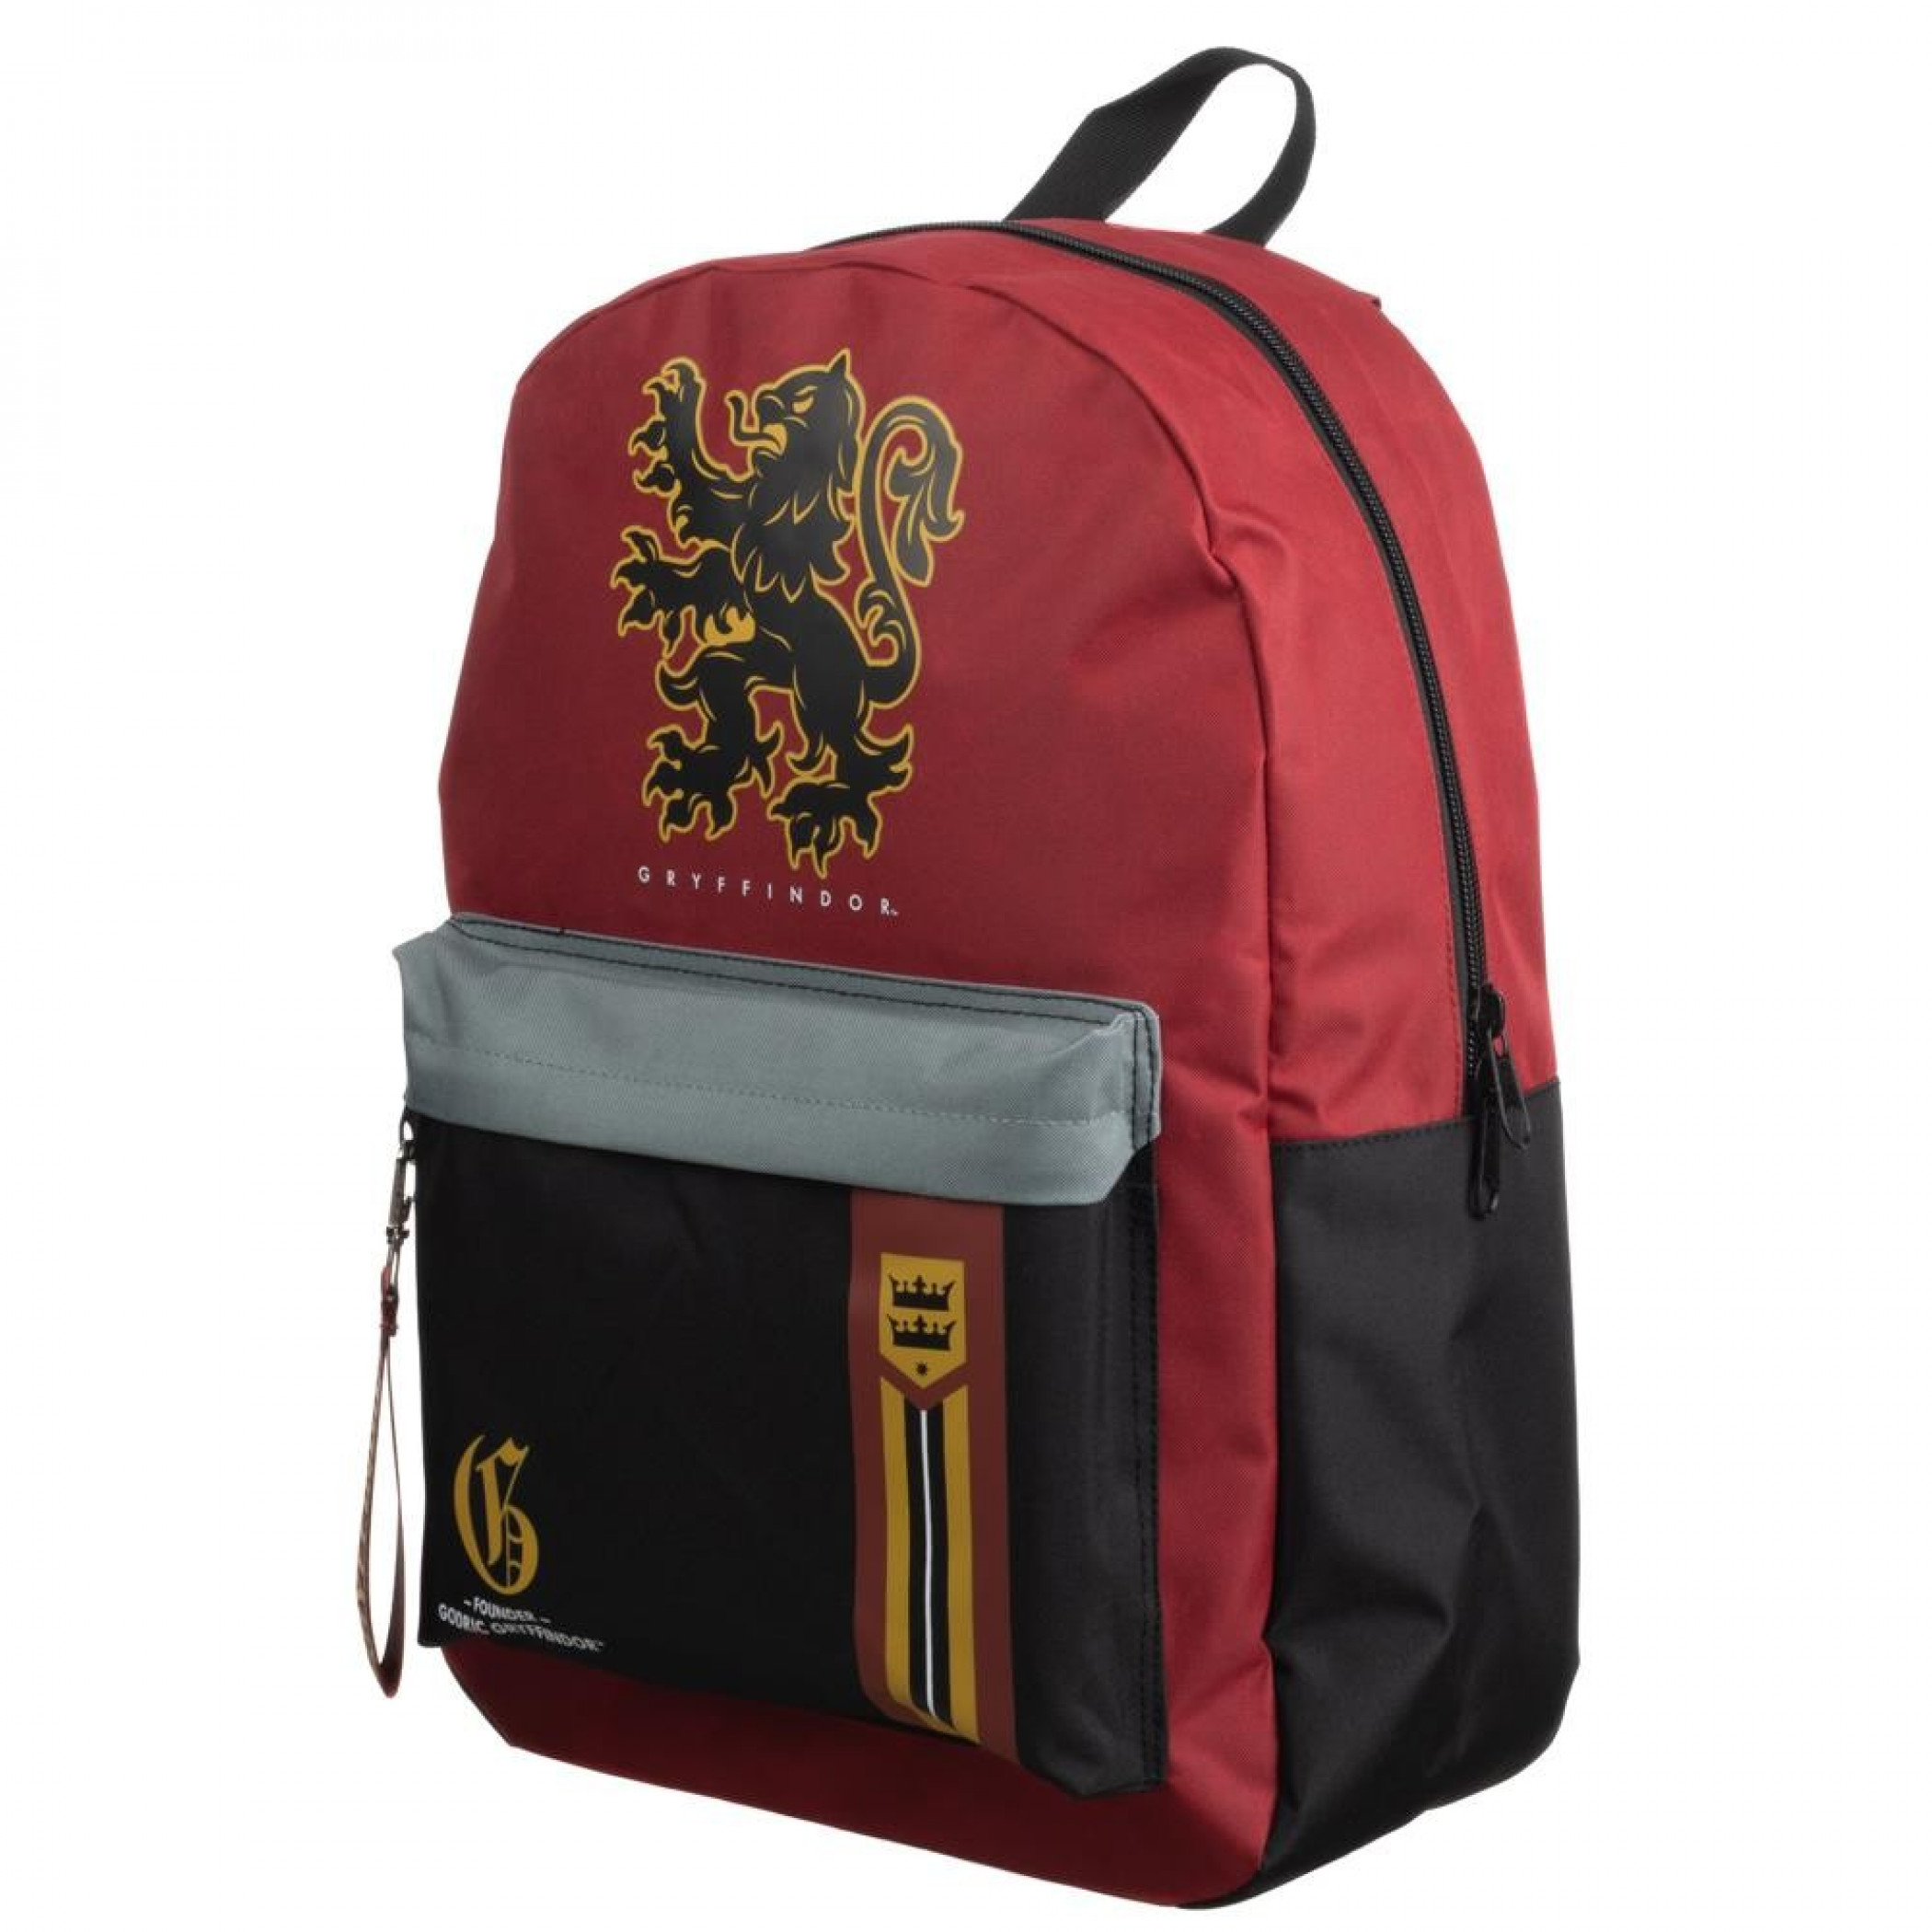 Harry Potter Gryffindor Mixblock Backpack with Webbing Puller